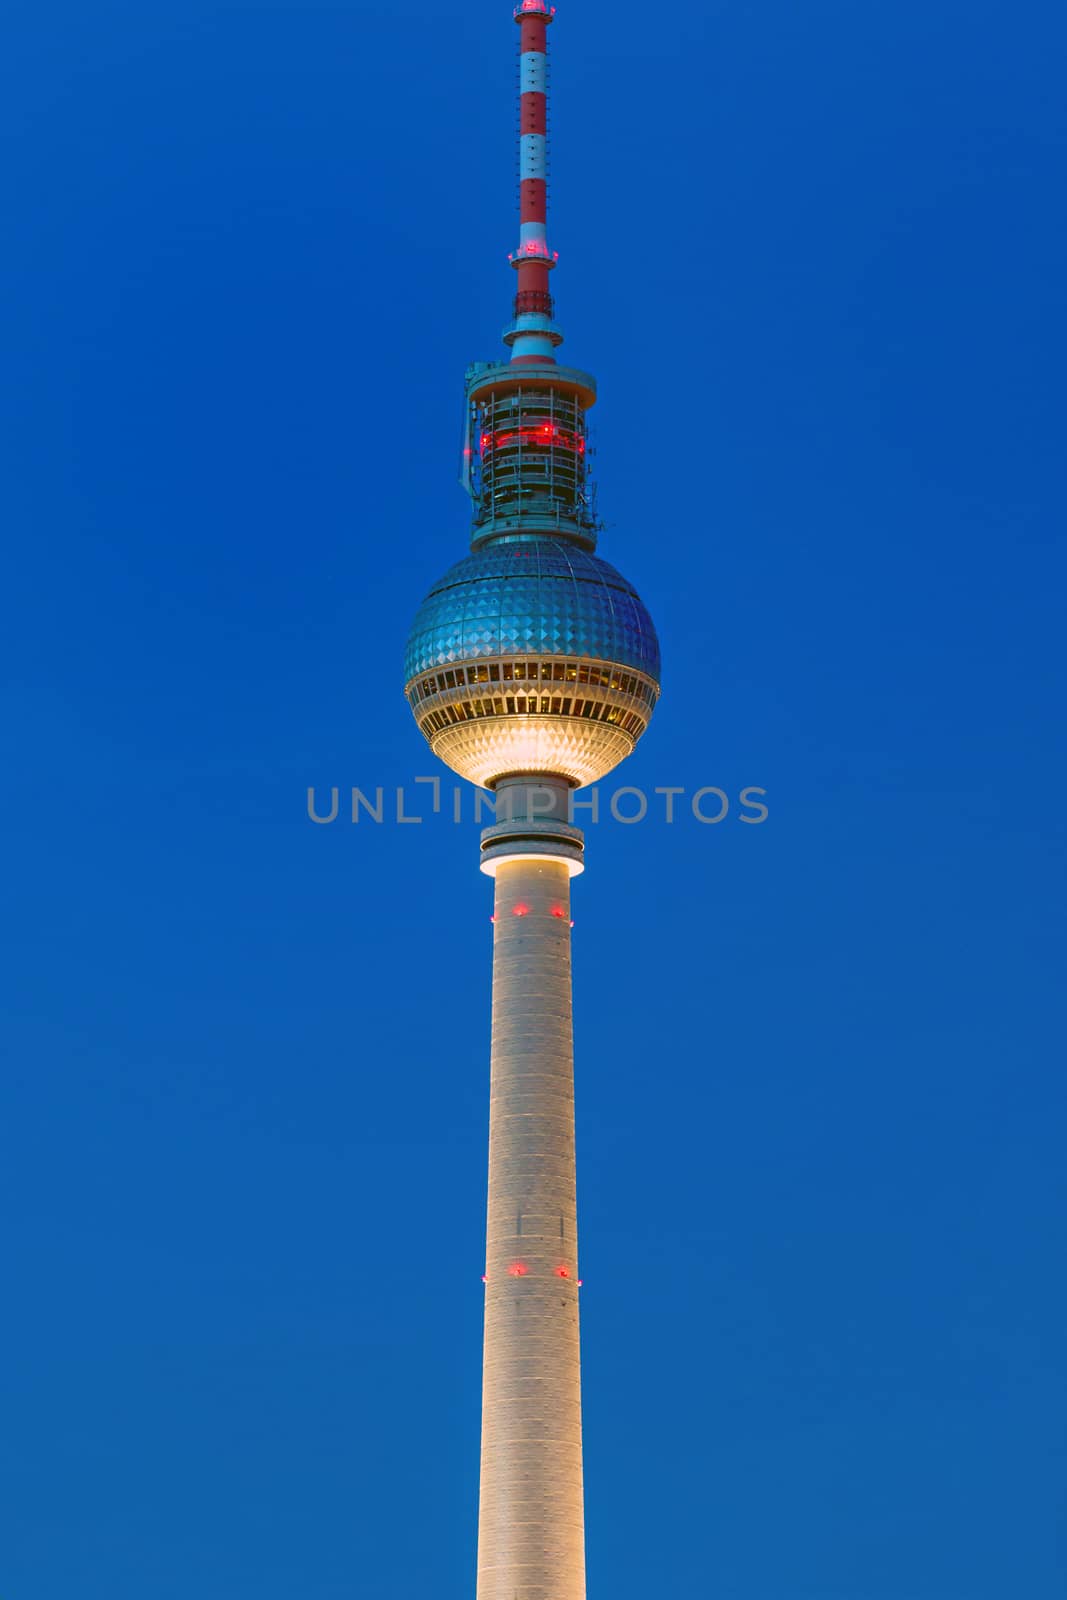 The TV Tower in Berlin by elxeneize